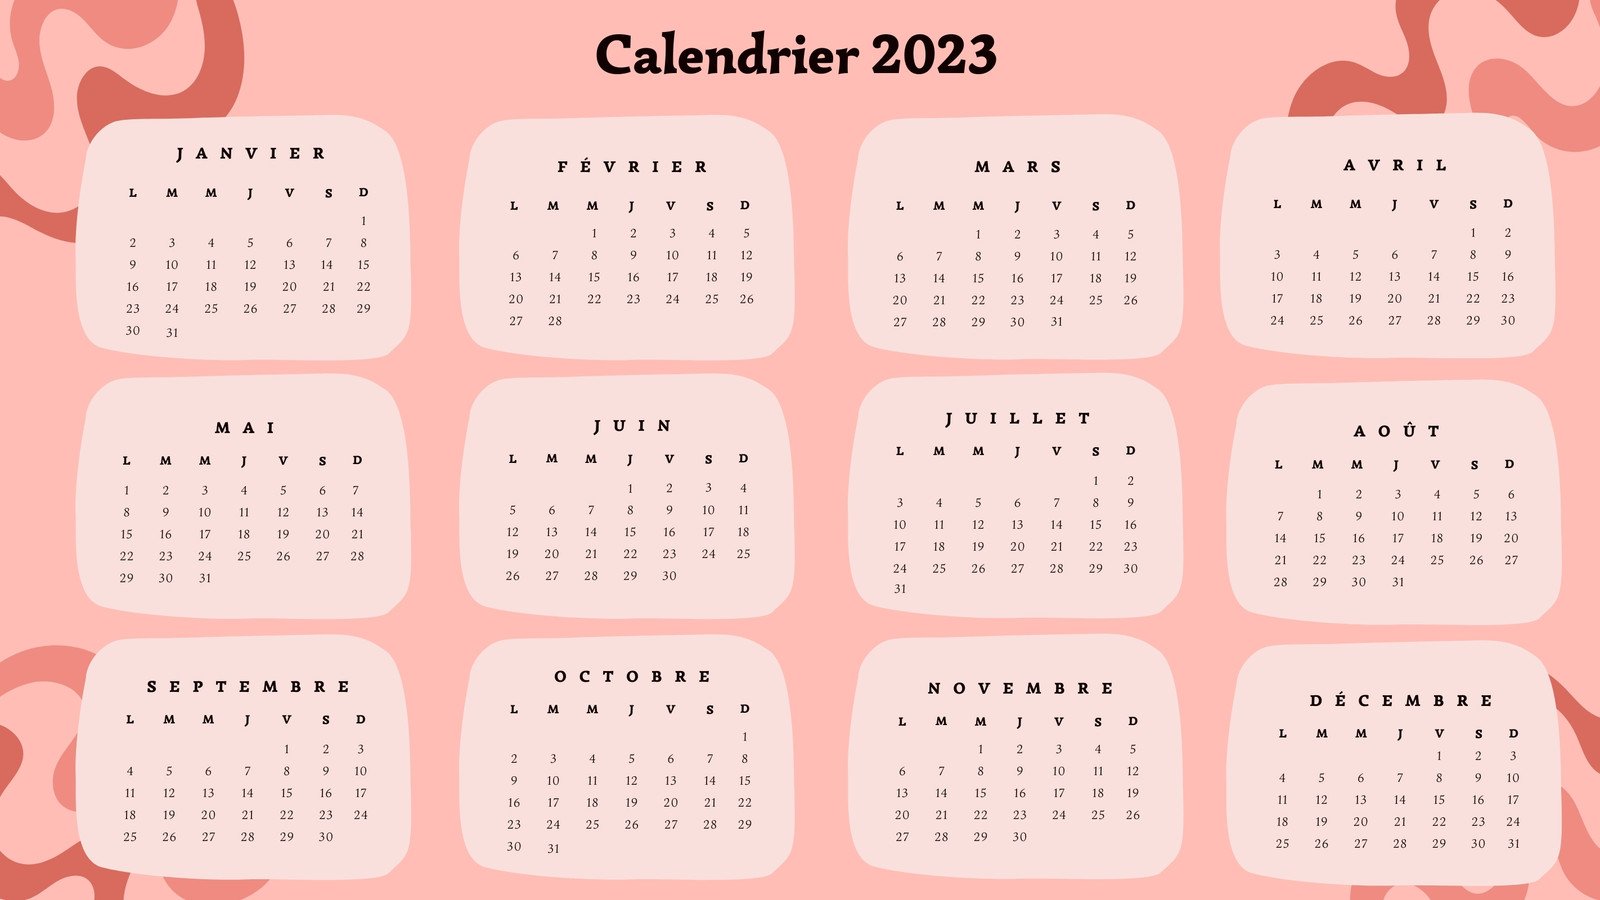 Mini calendrier familial mensuel - Septembre 2023 - Décembre 2024 - Agenda  - Informatique & Communication - Livre